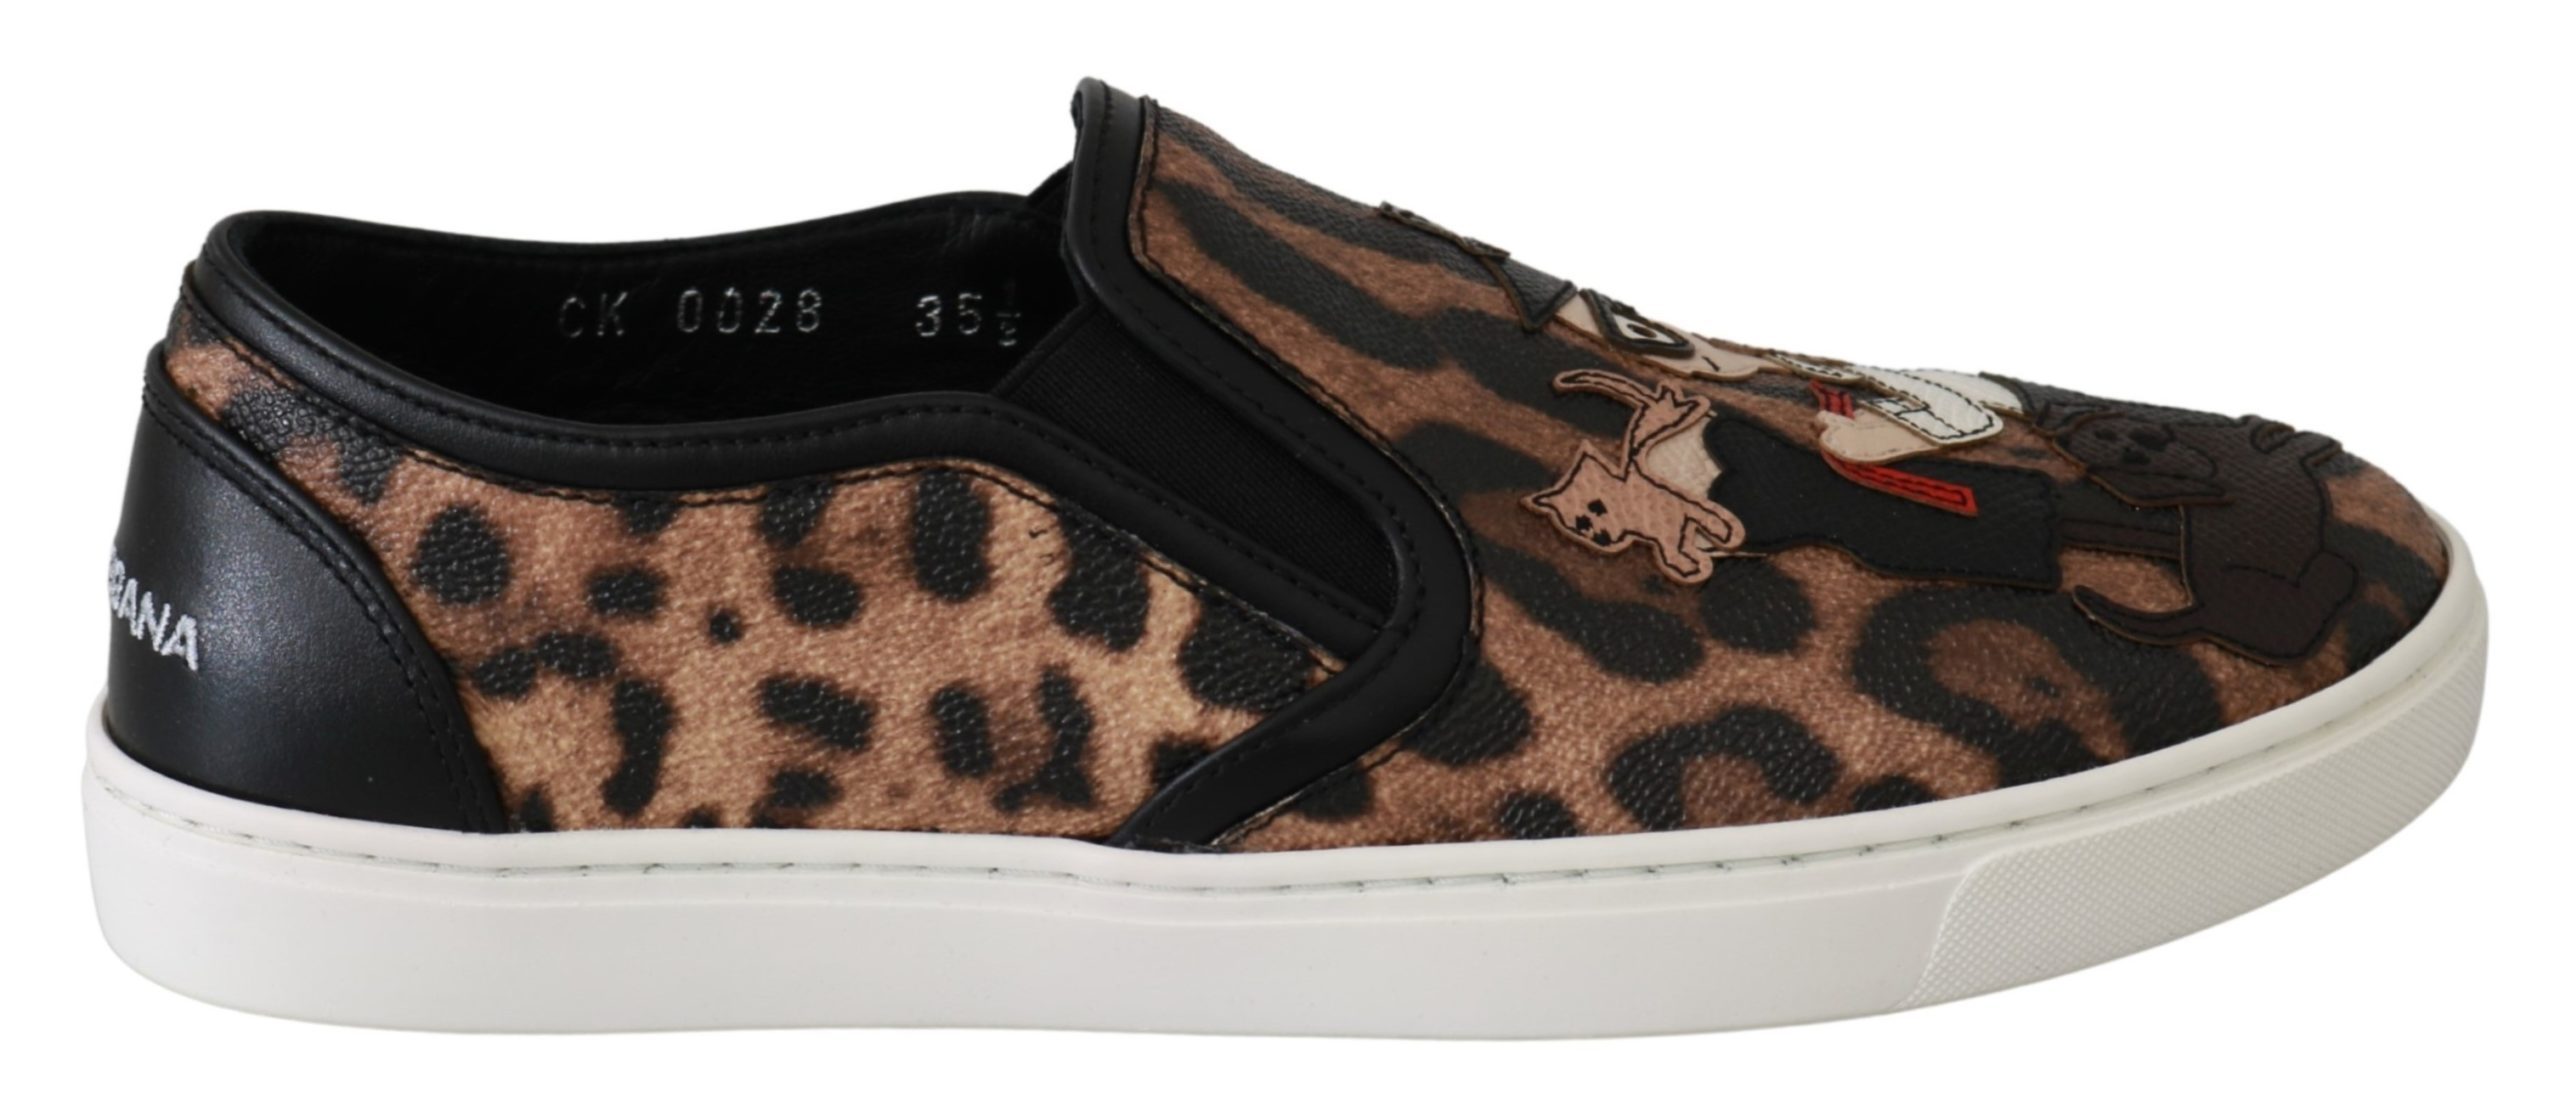 Dolce & Gabbana Women's Leather Leopard Flat Shoe Brown LA6483 - EU35.5/US5